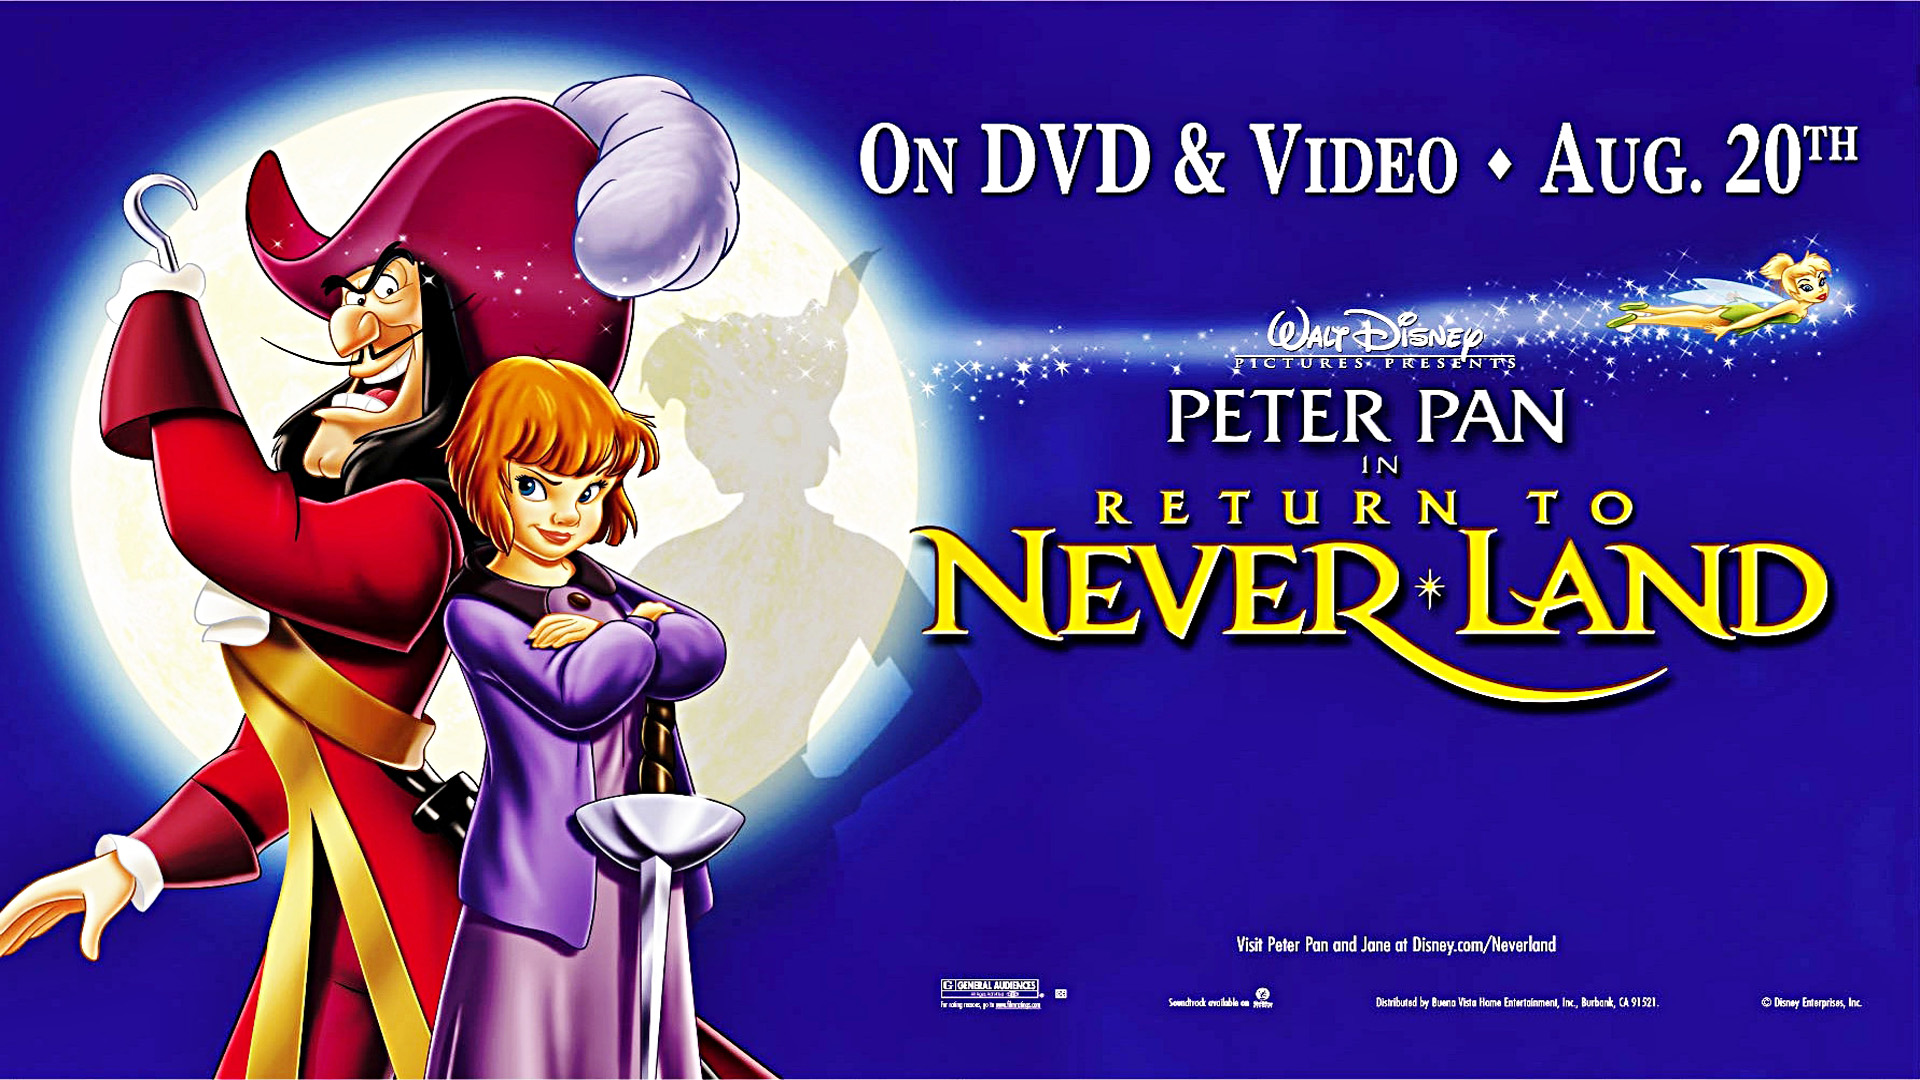 Уолт дисней список. Peter Pan 2 Return to Neverland. Peter Pan Return to Neverland. Питер Пэн Walt Disney DVD. DVD Уолт Дисней Питер Пэн.